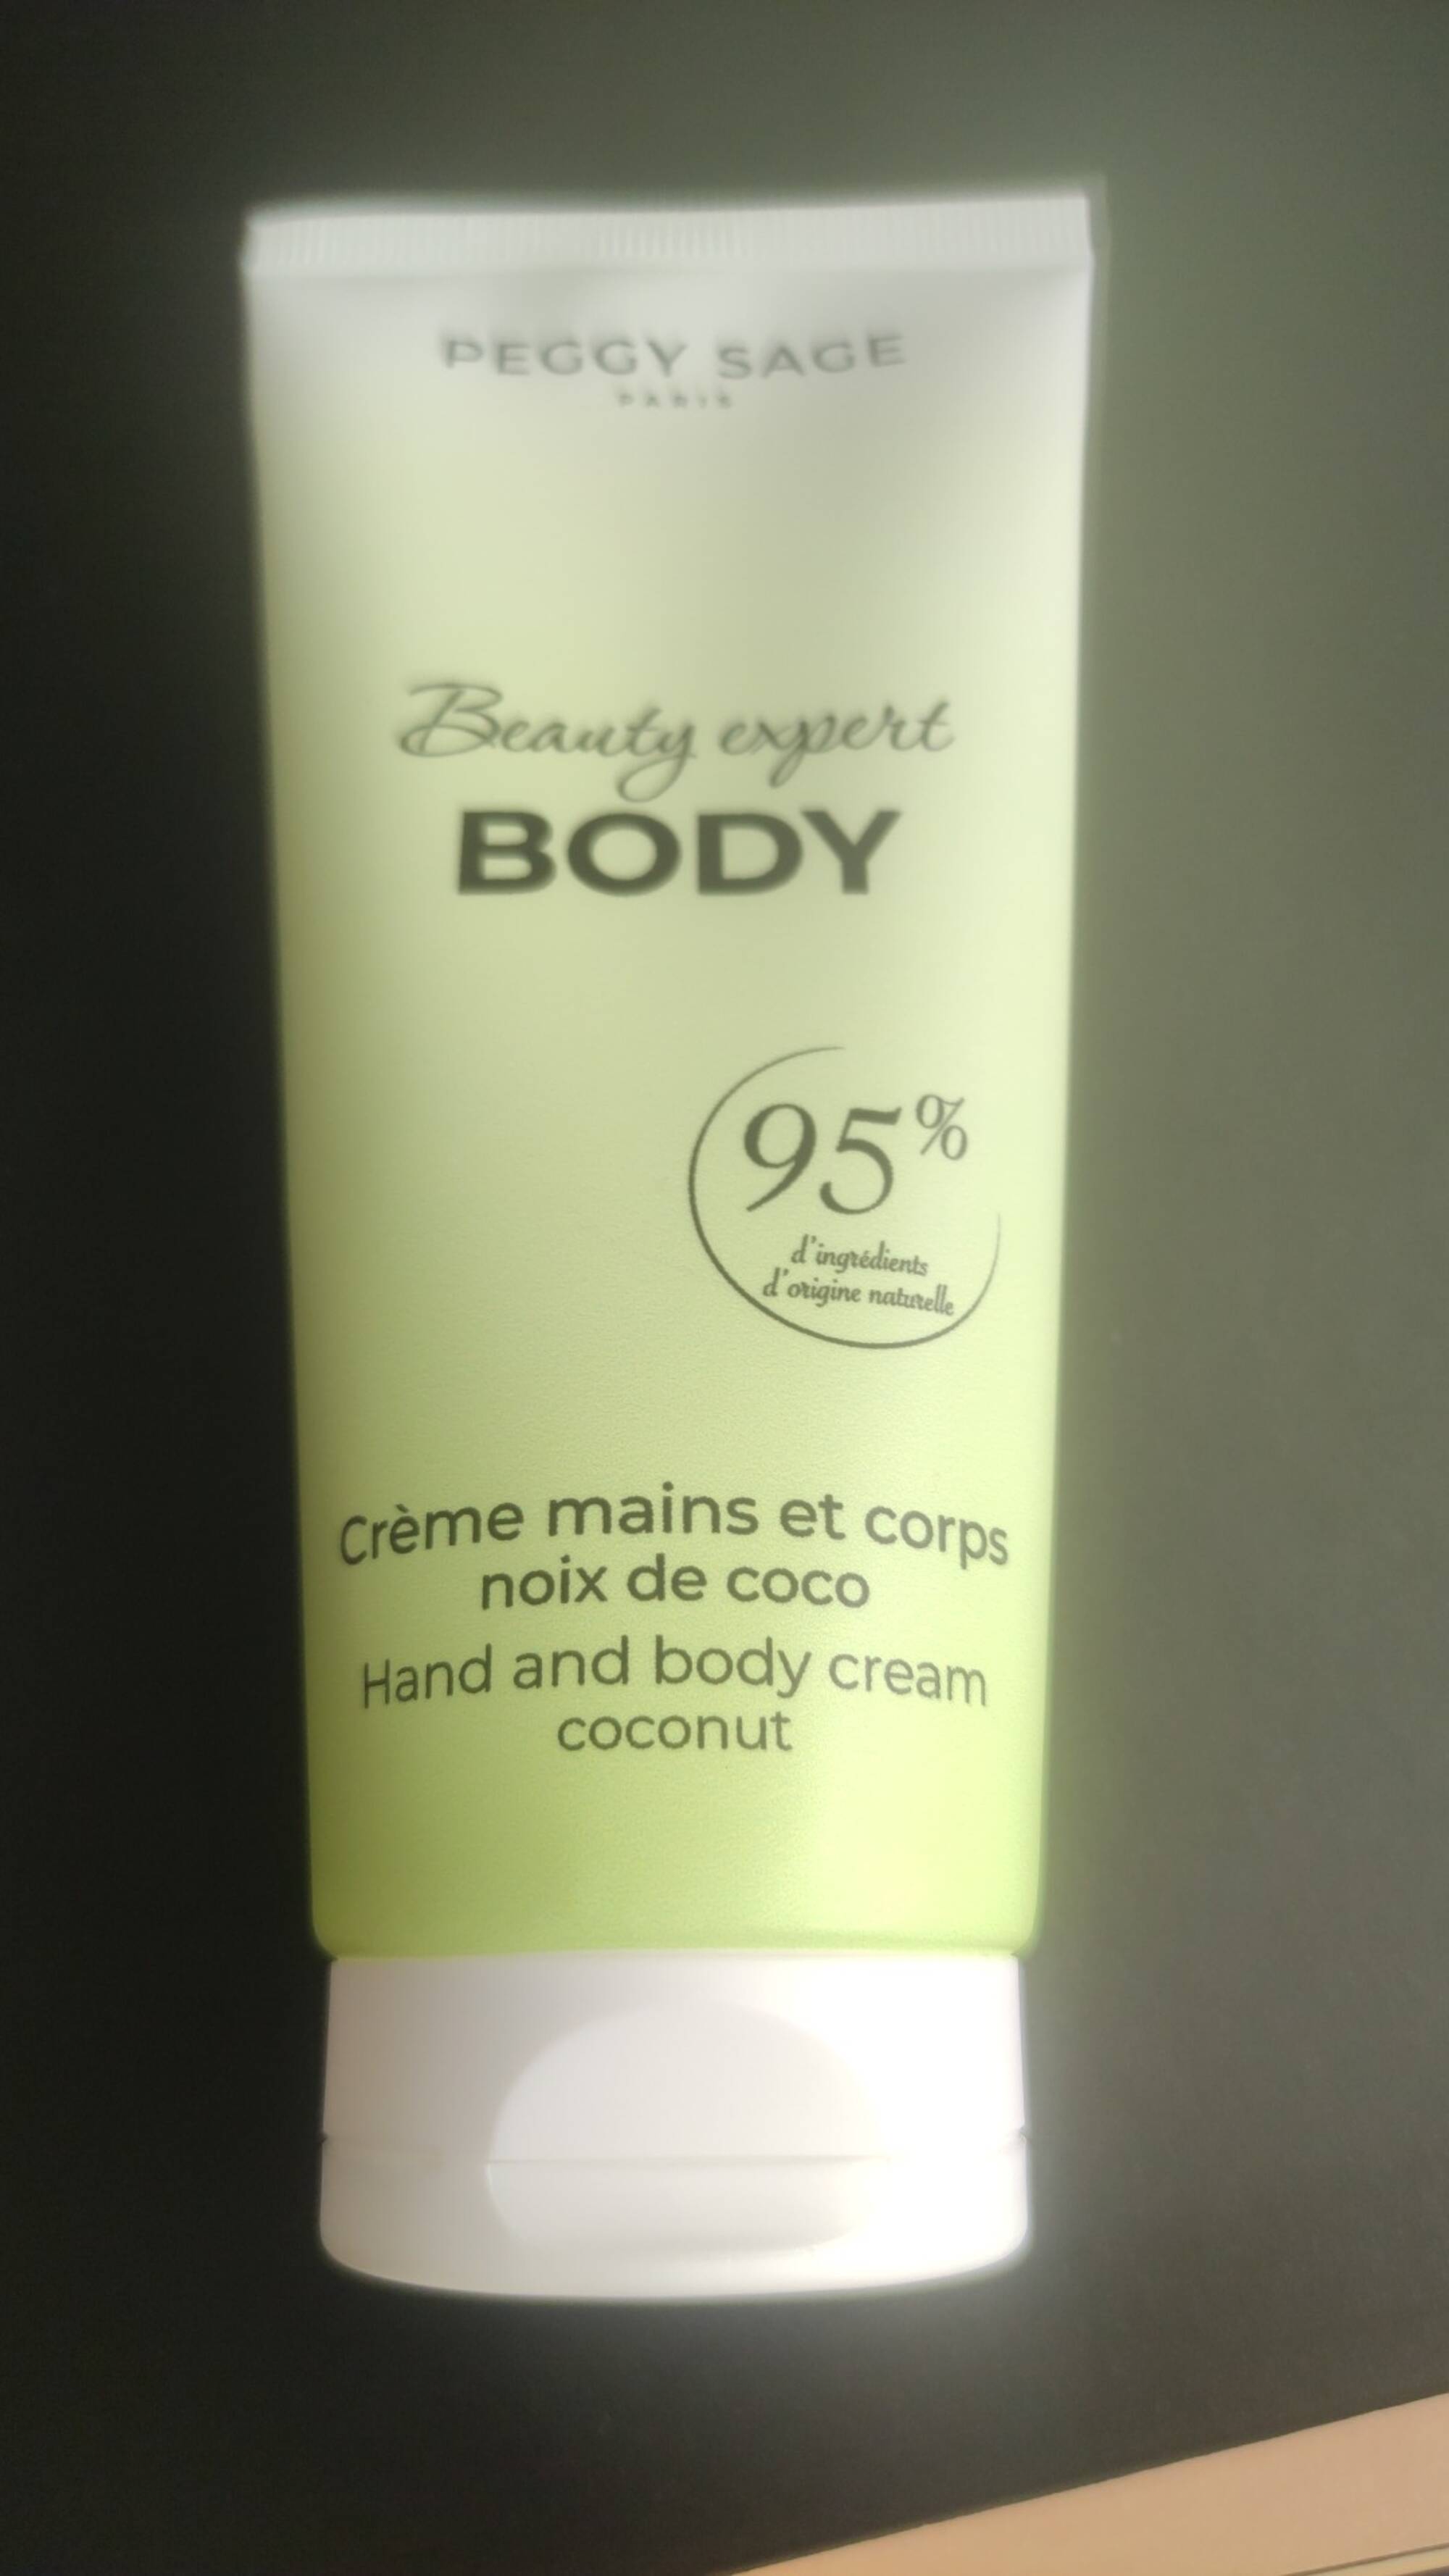 PEGGY SAGE PARIS - Body beauty expert - Crème mains et corps